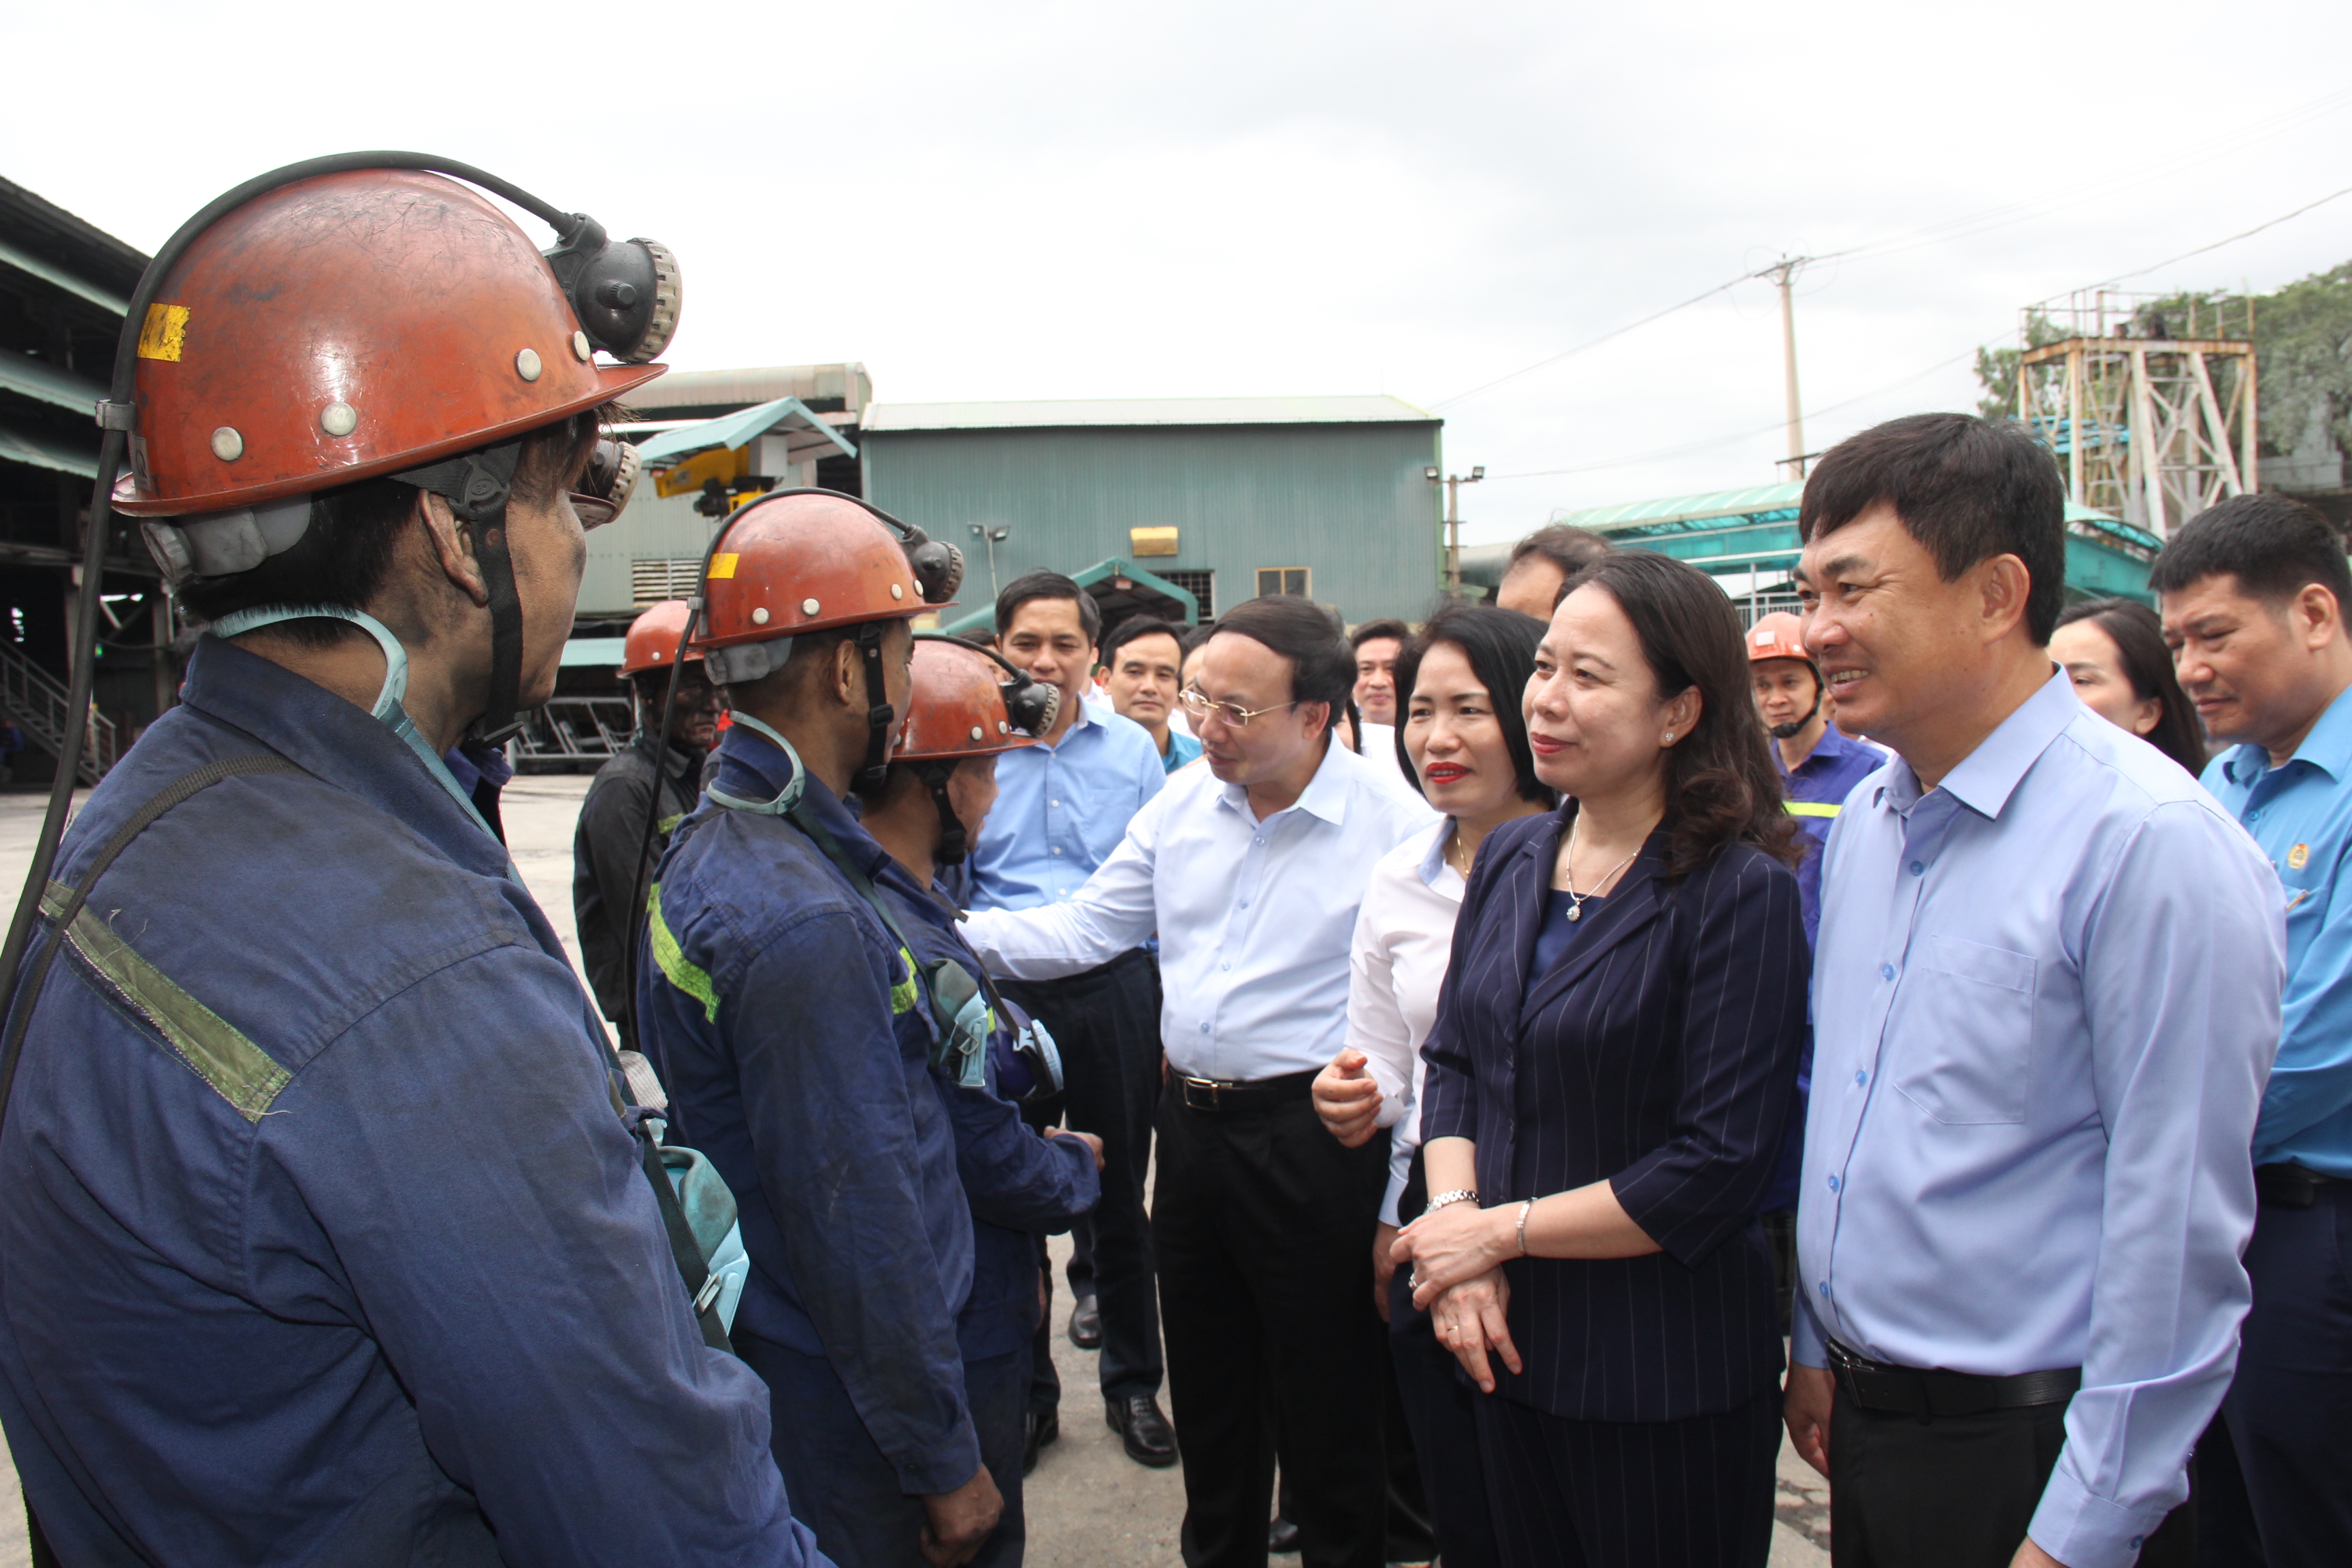 Đội ngũ công nhân lao động ngành Than có vai trò và đóng góp quan trọng đối với sự phát triển kinh tế - xã hội của tỉnh Quảng Ninh và đất nước - Ảnh 8